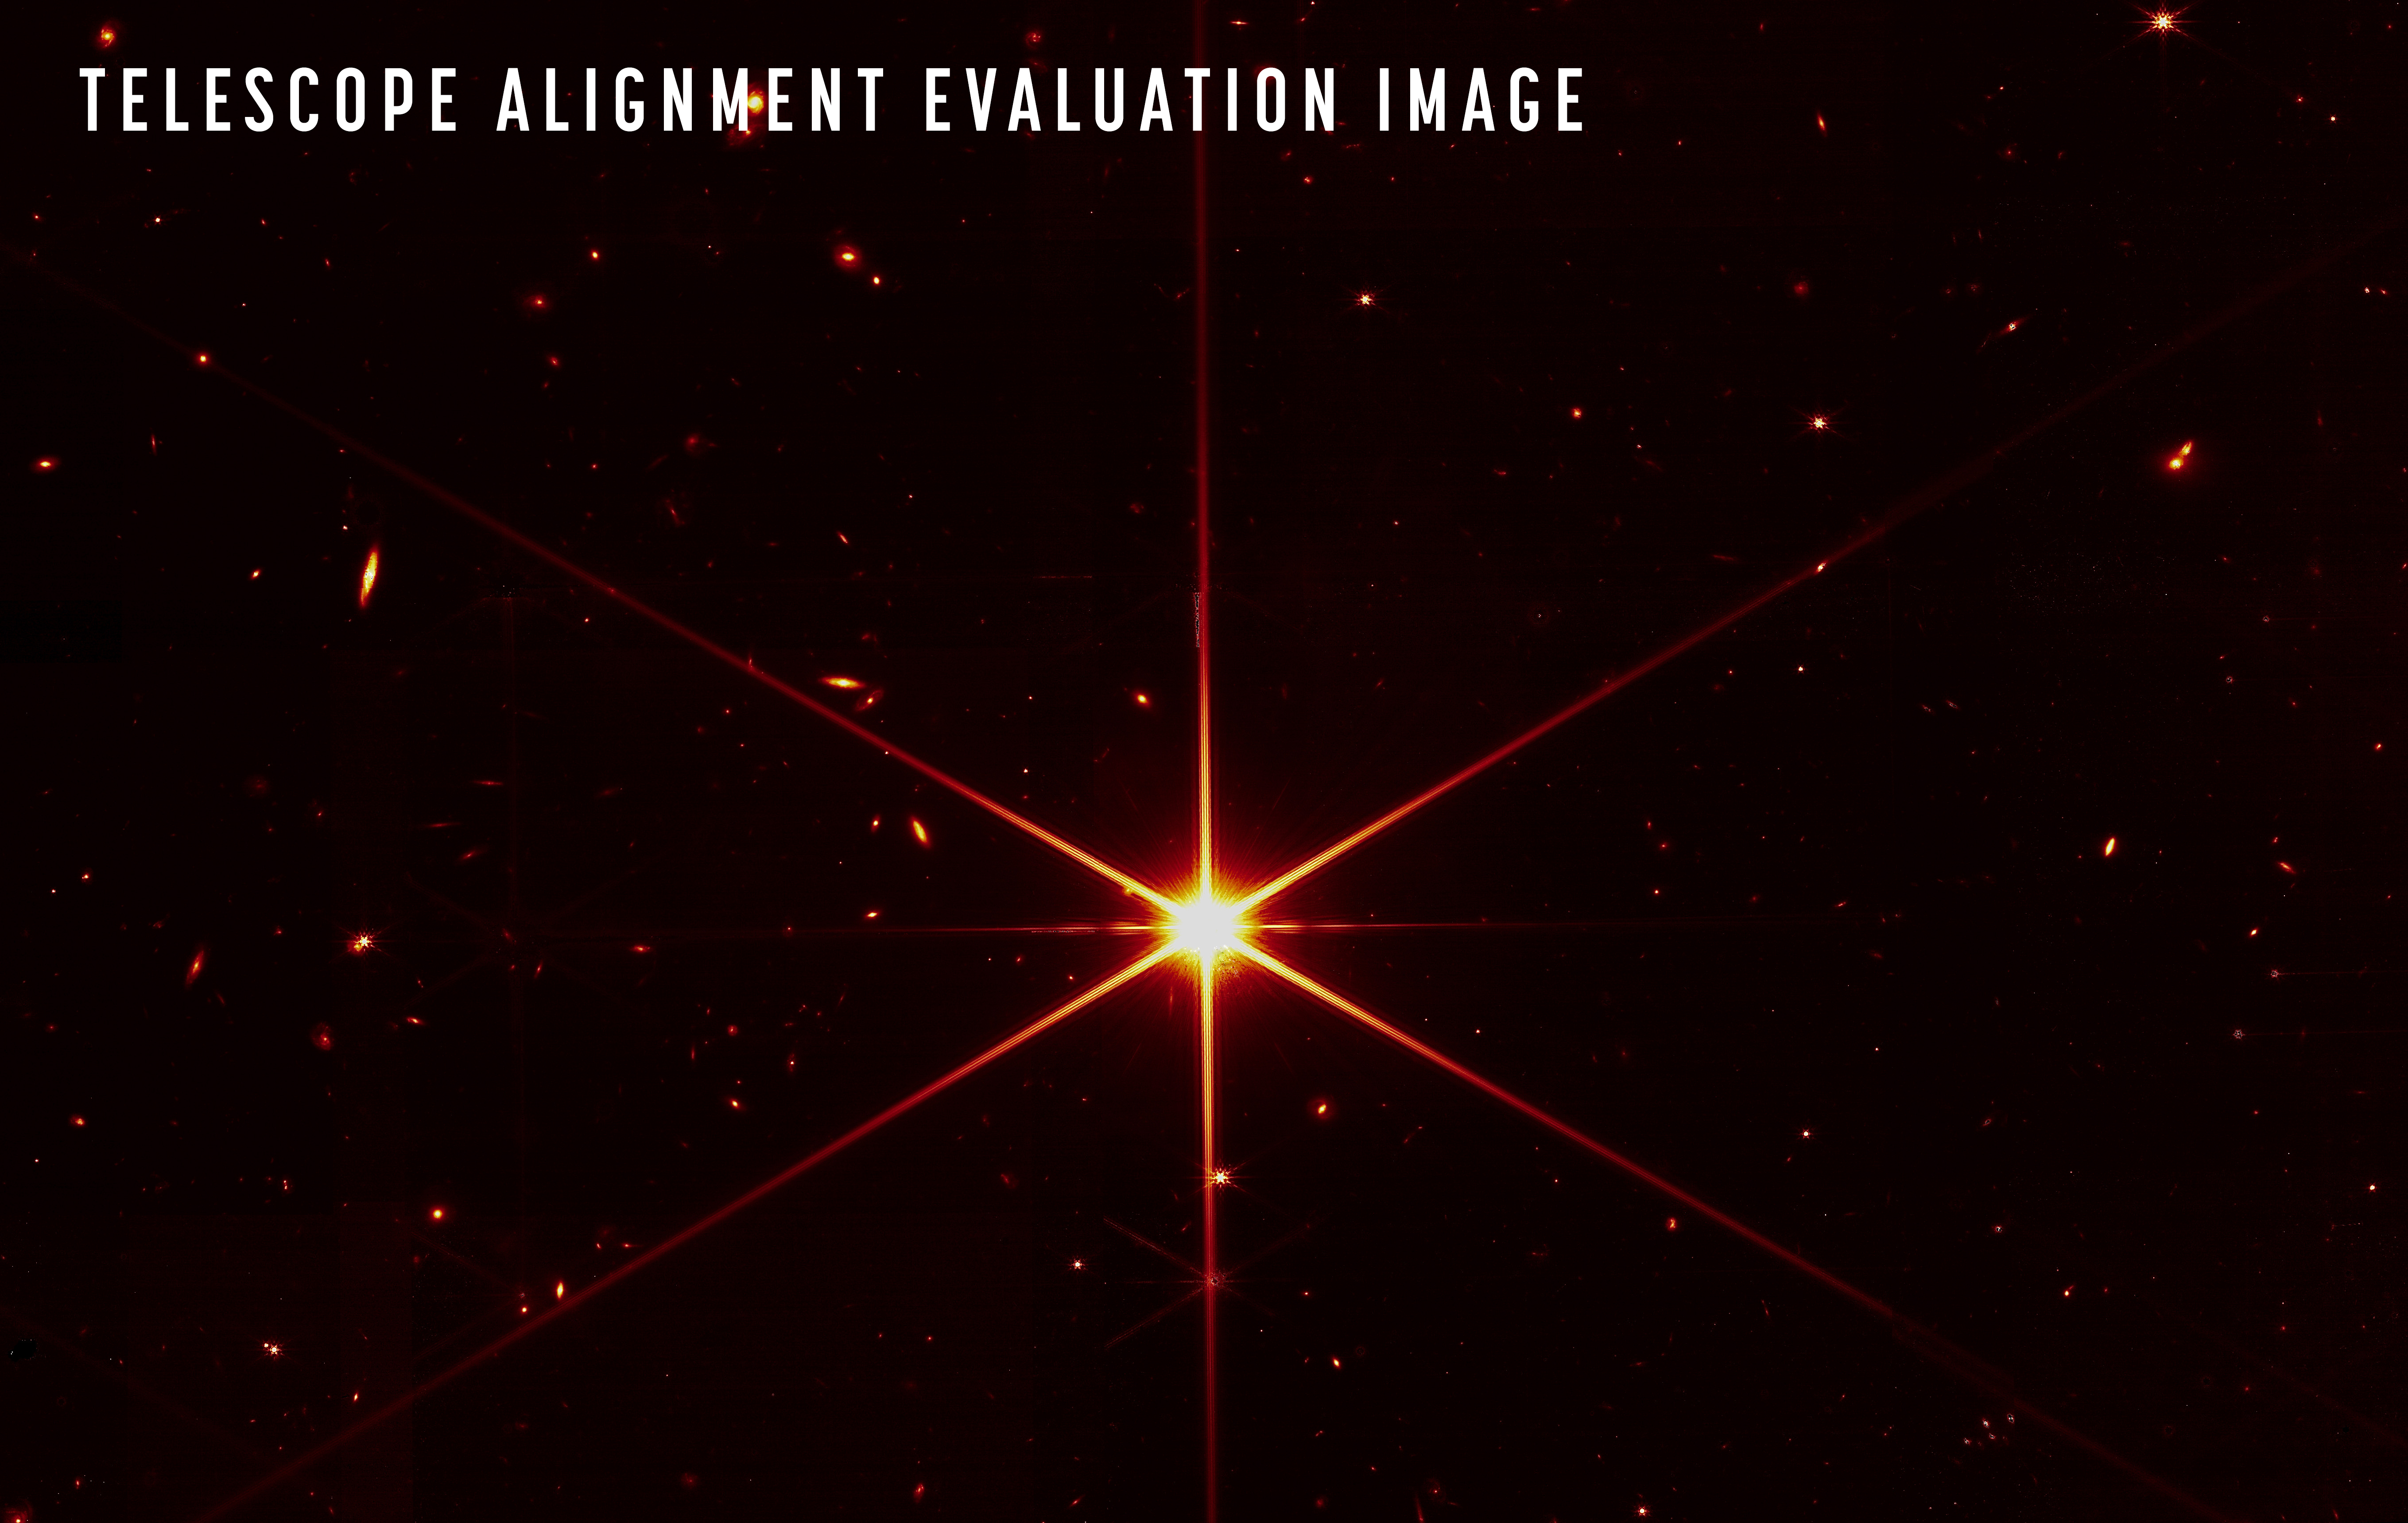 Kiadták az első teljes képet, amit a James Webb űrtávcső készített egy csillagról